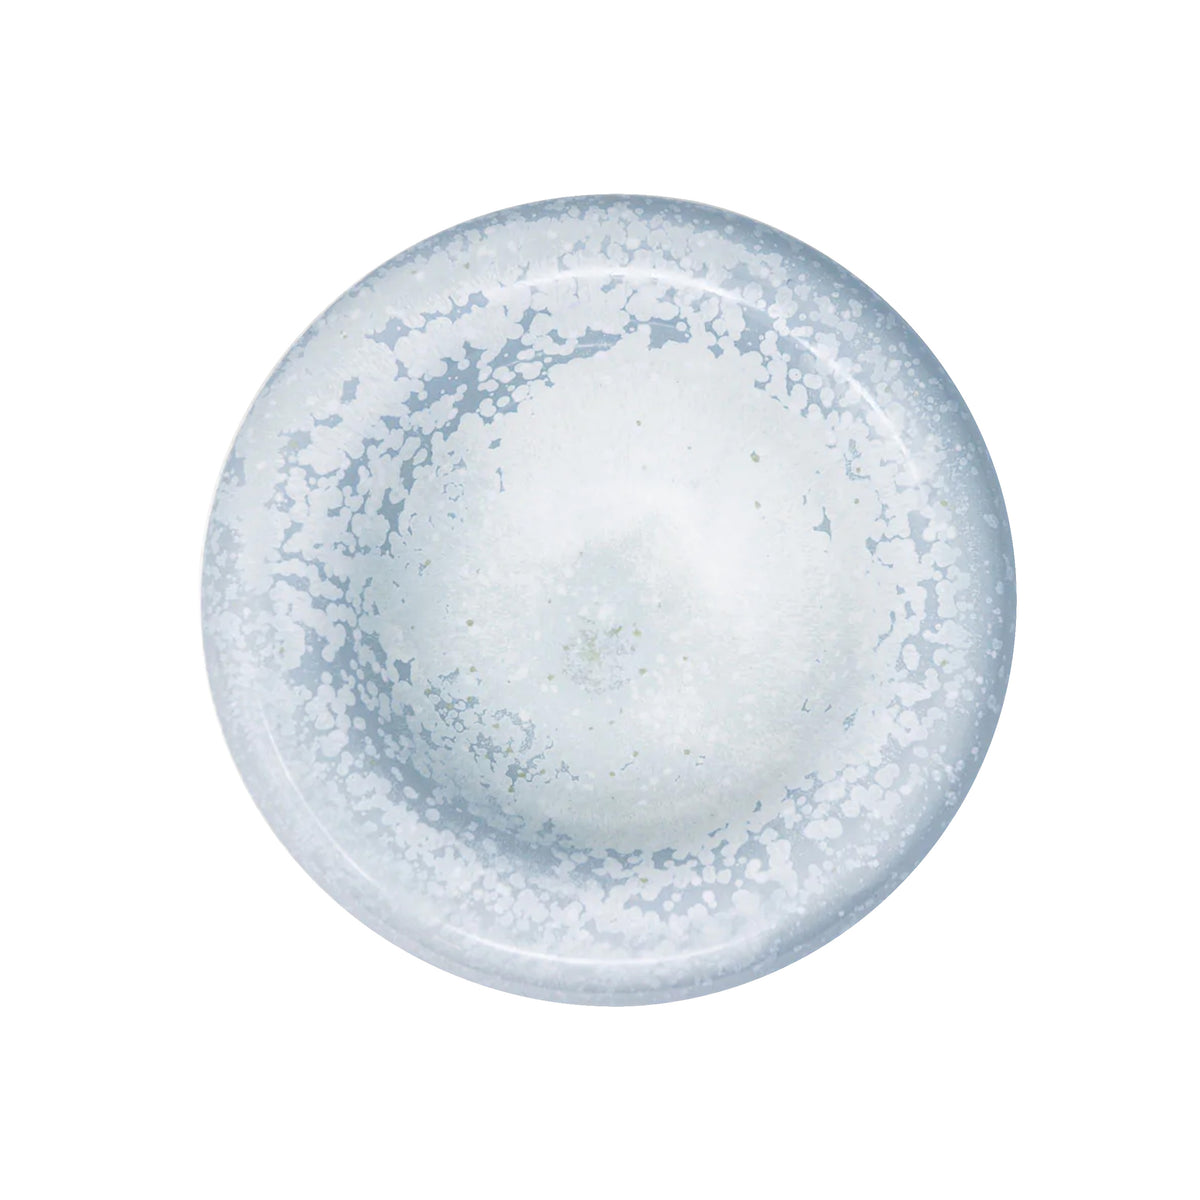 SONG Ocean - Bubble 11 cm